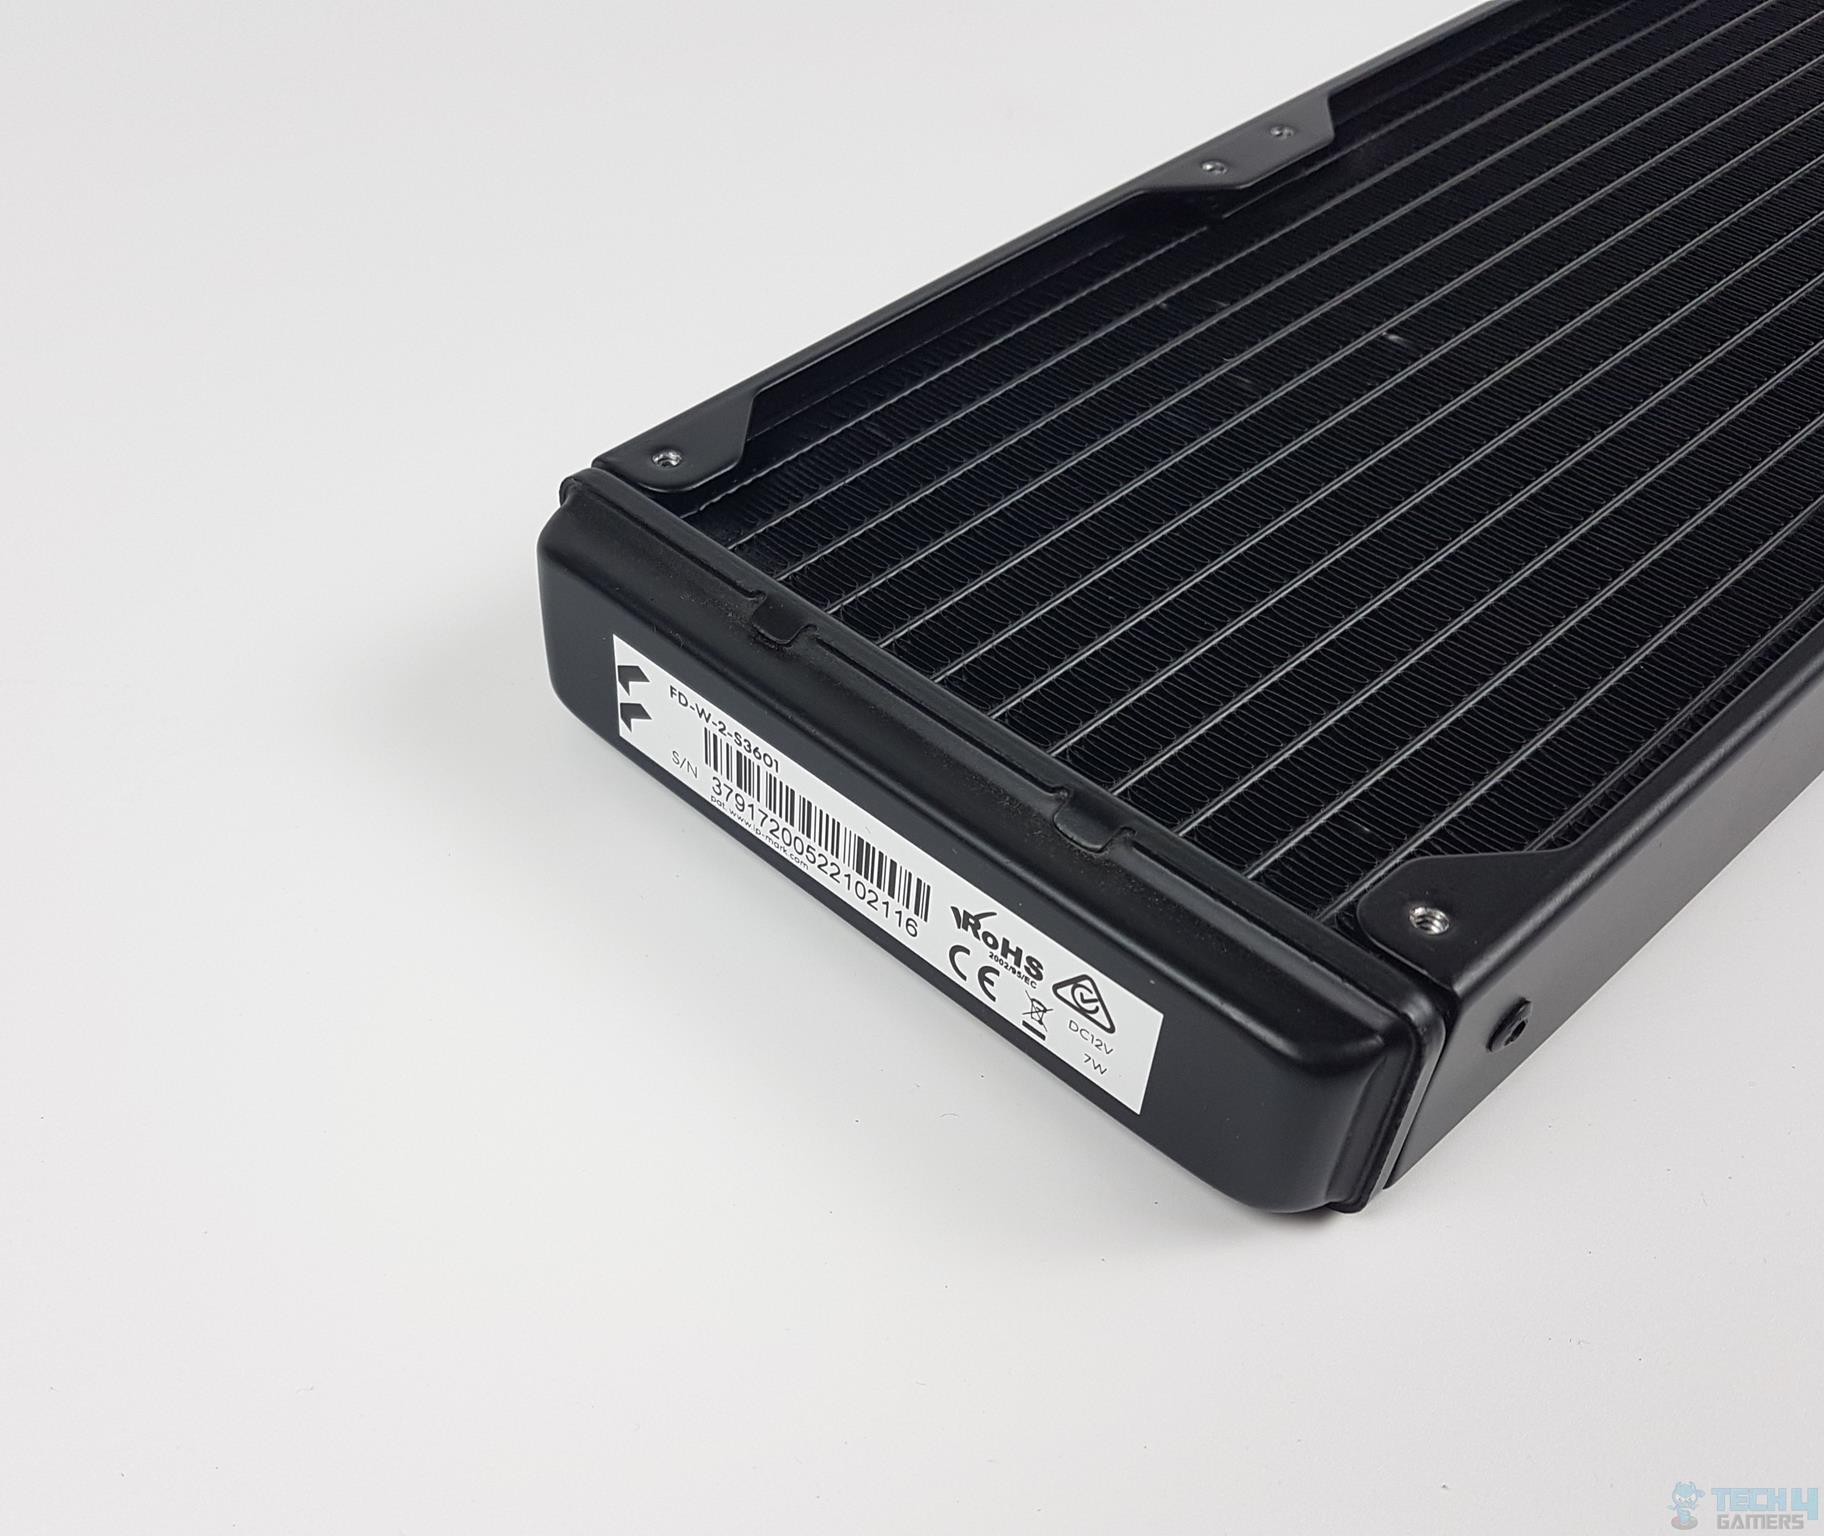 Fractal Design Celsius+ S36 Dynamic Cooler — The side of the radiator